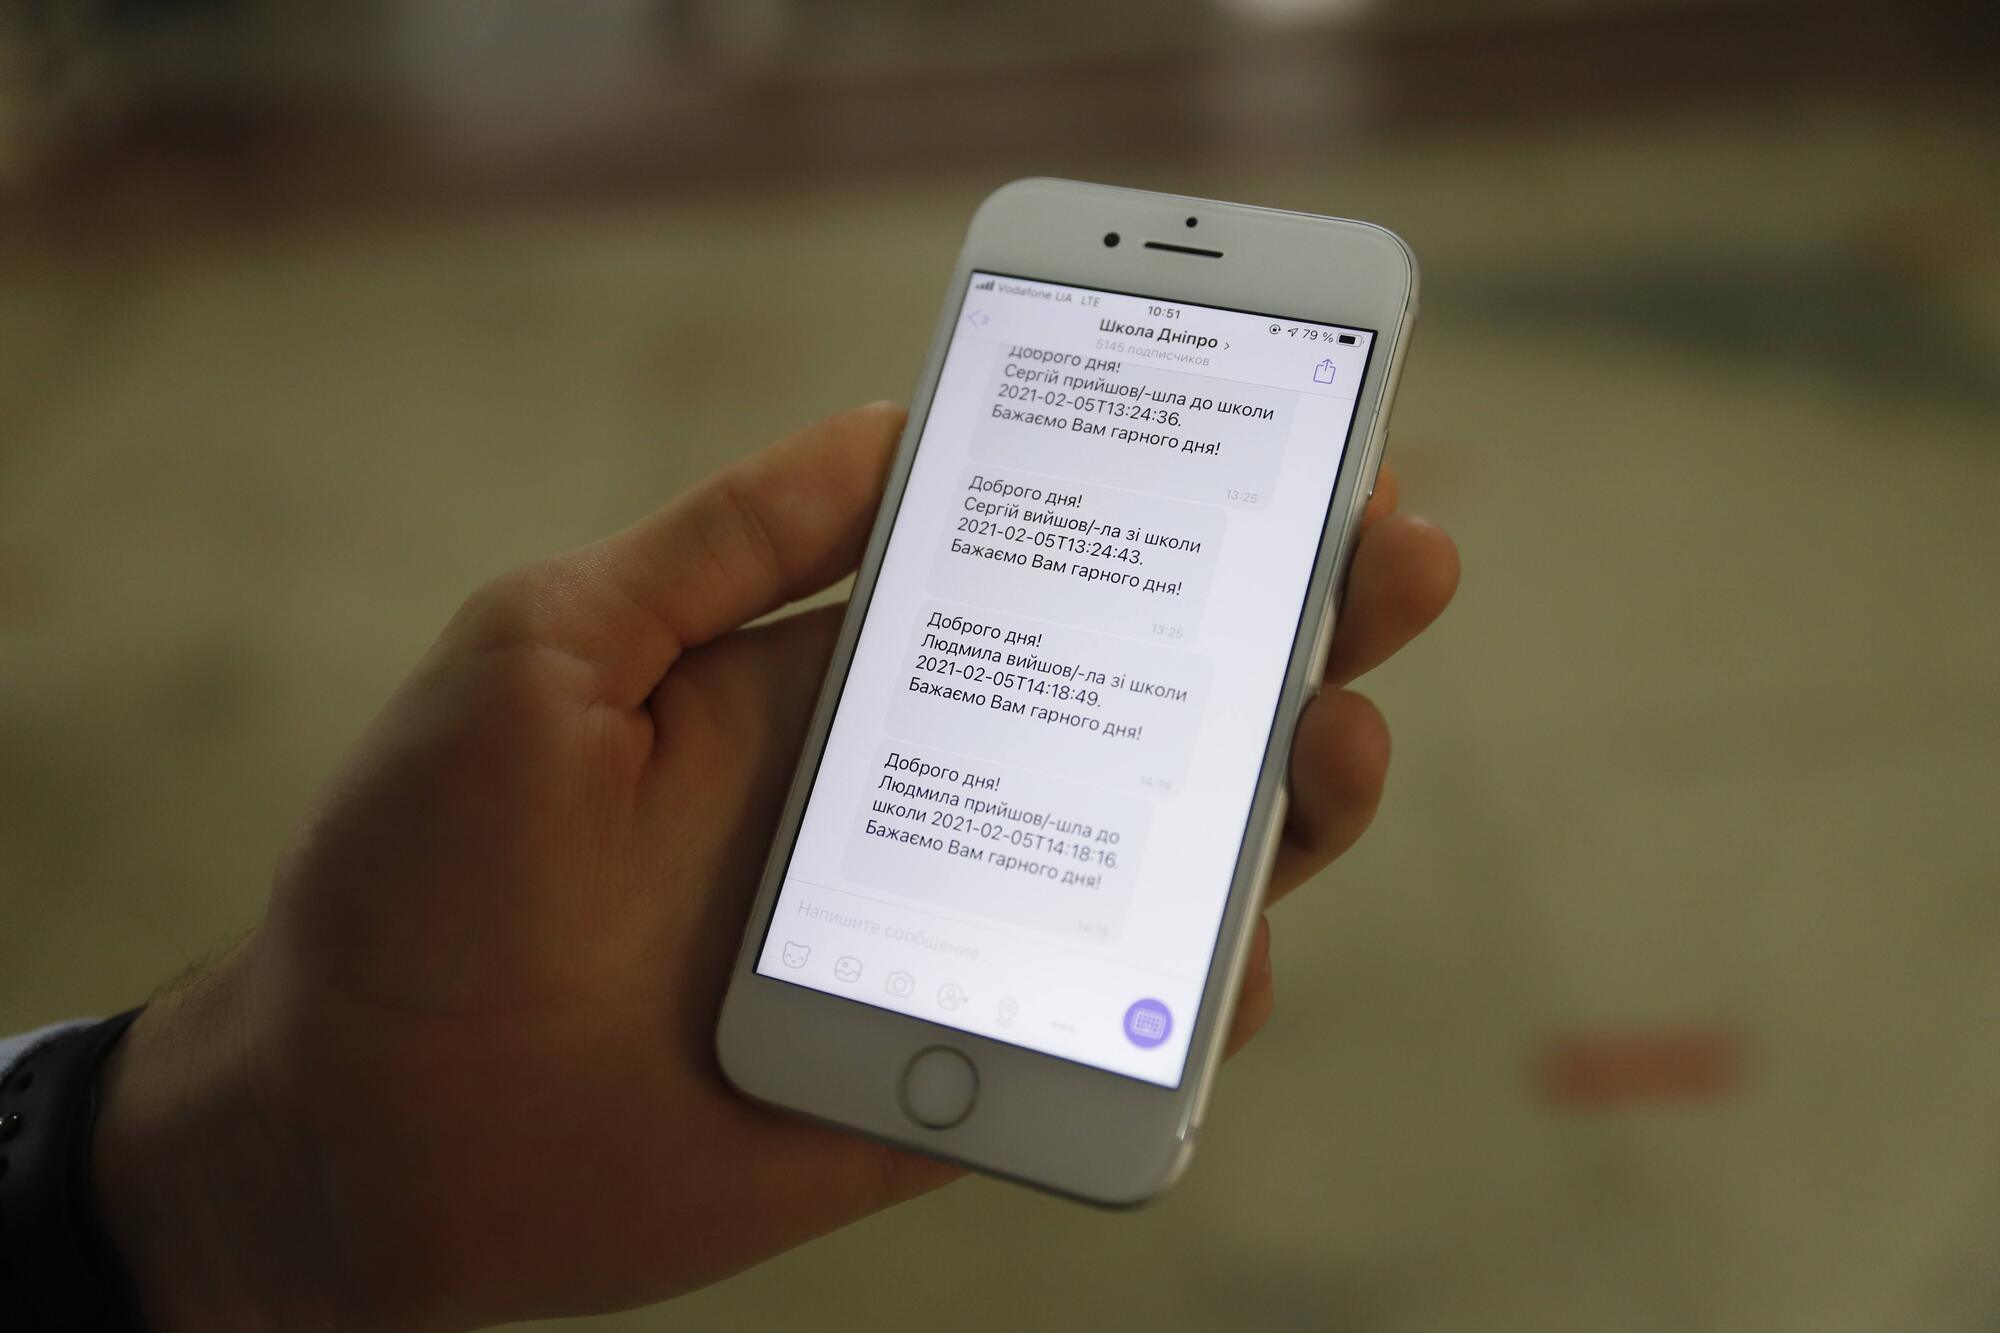 Родителям на телефон через боты в Viber или Telegram приходит сообщение о приходе ребенка